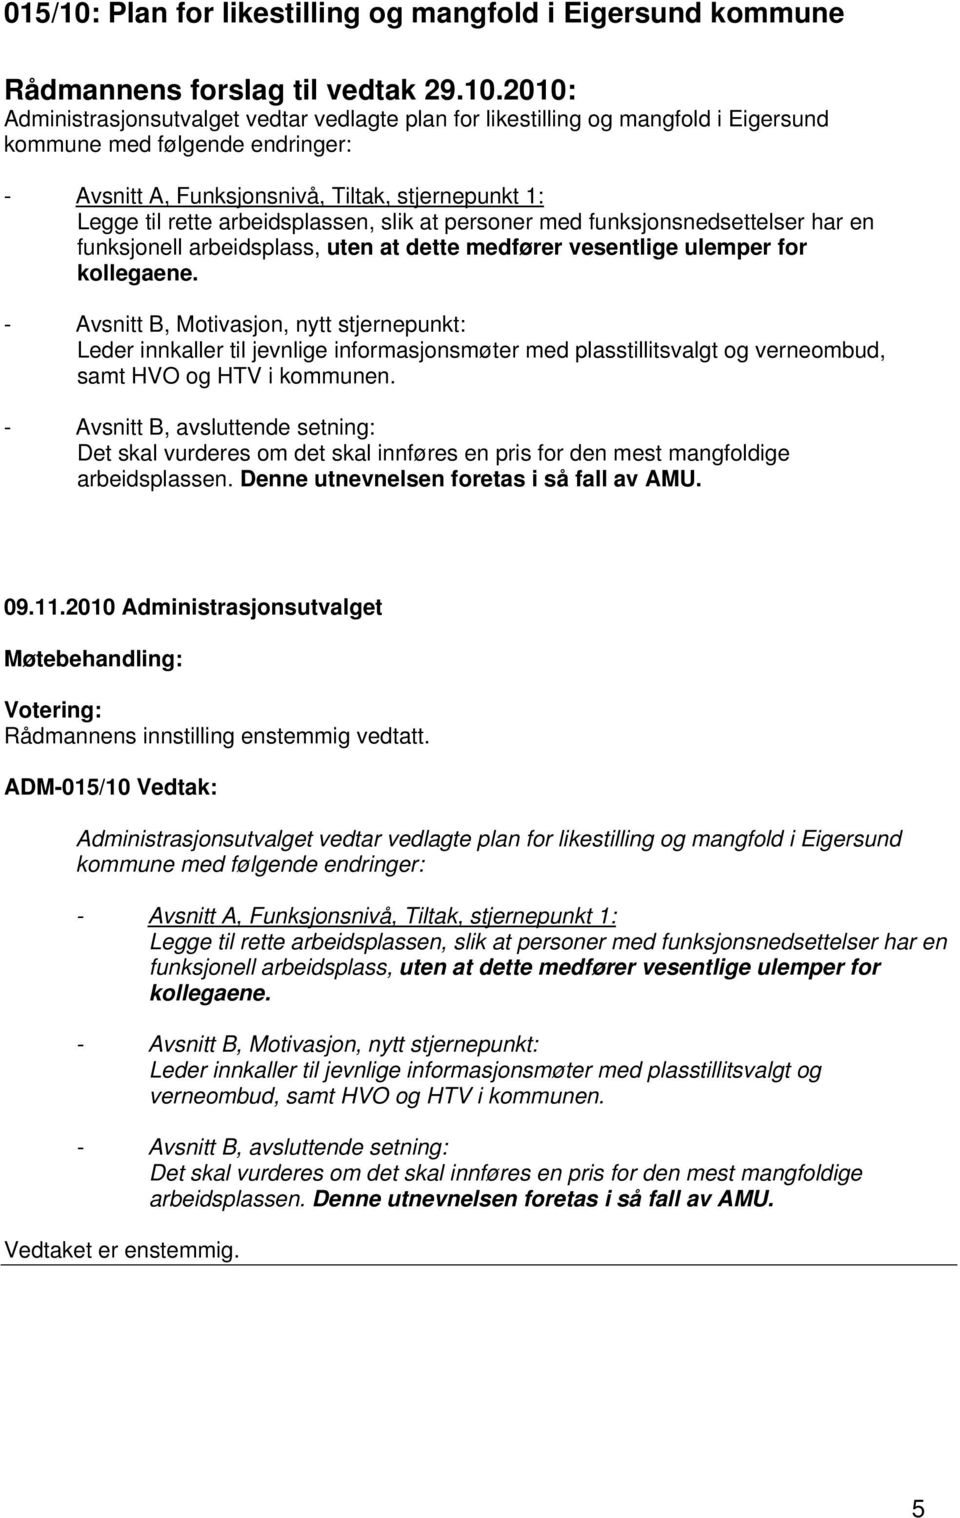 2010: Administrasjonsutvalget vedtar vedlagte plan for likestilling og mangfold i Eigersund kommune med følgende endringer: - Avsnitt A, Funksjonsnivå, Tiltak, stjernepunkt 1: Legge til rette